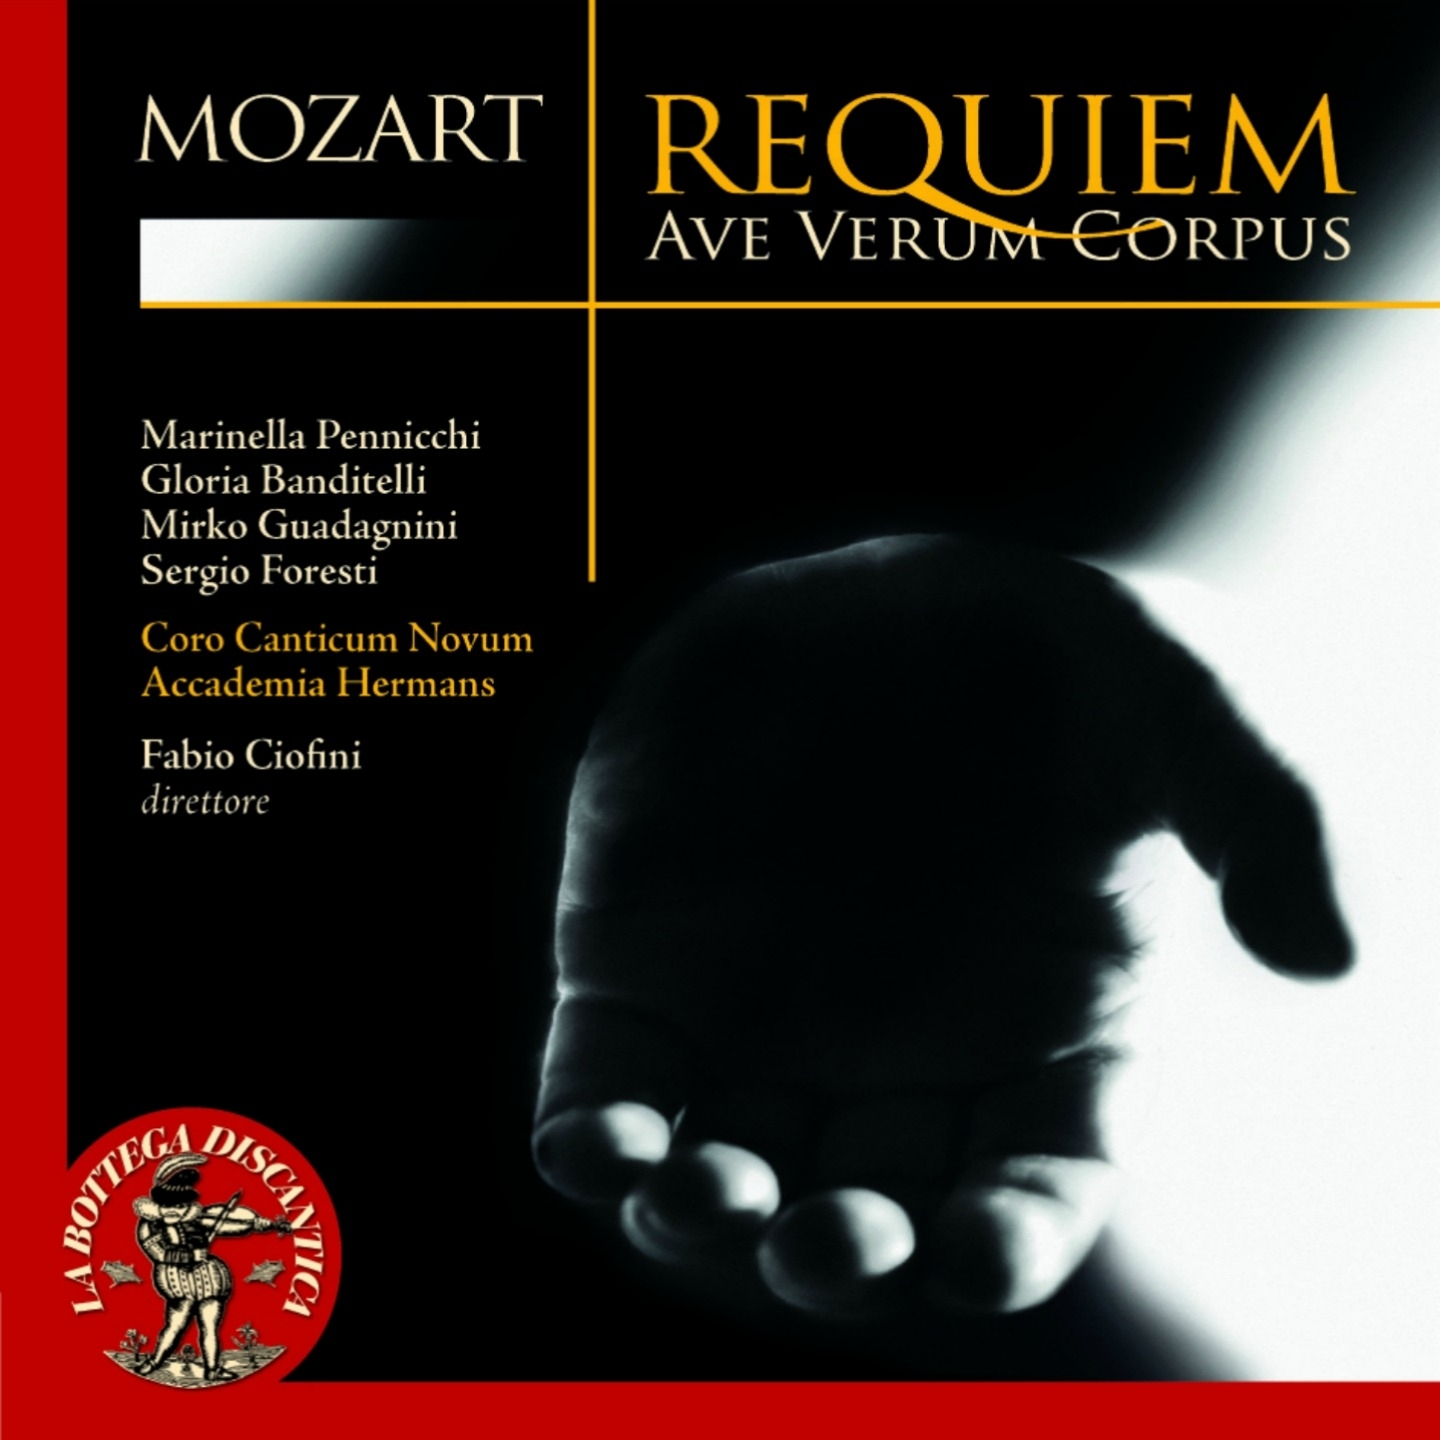 Requiem kv626 in d minor: Cum sactis tuis